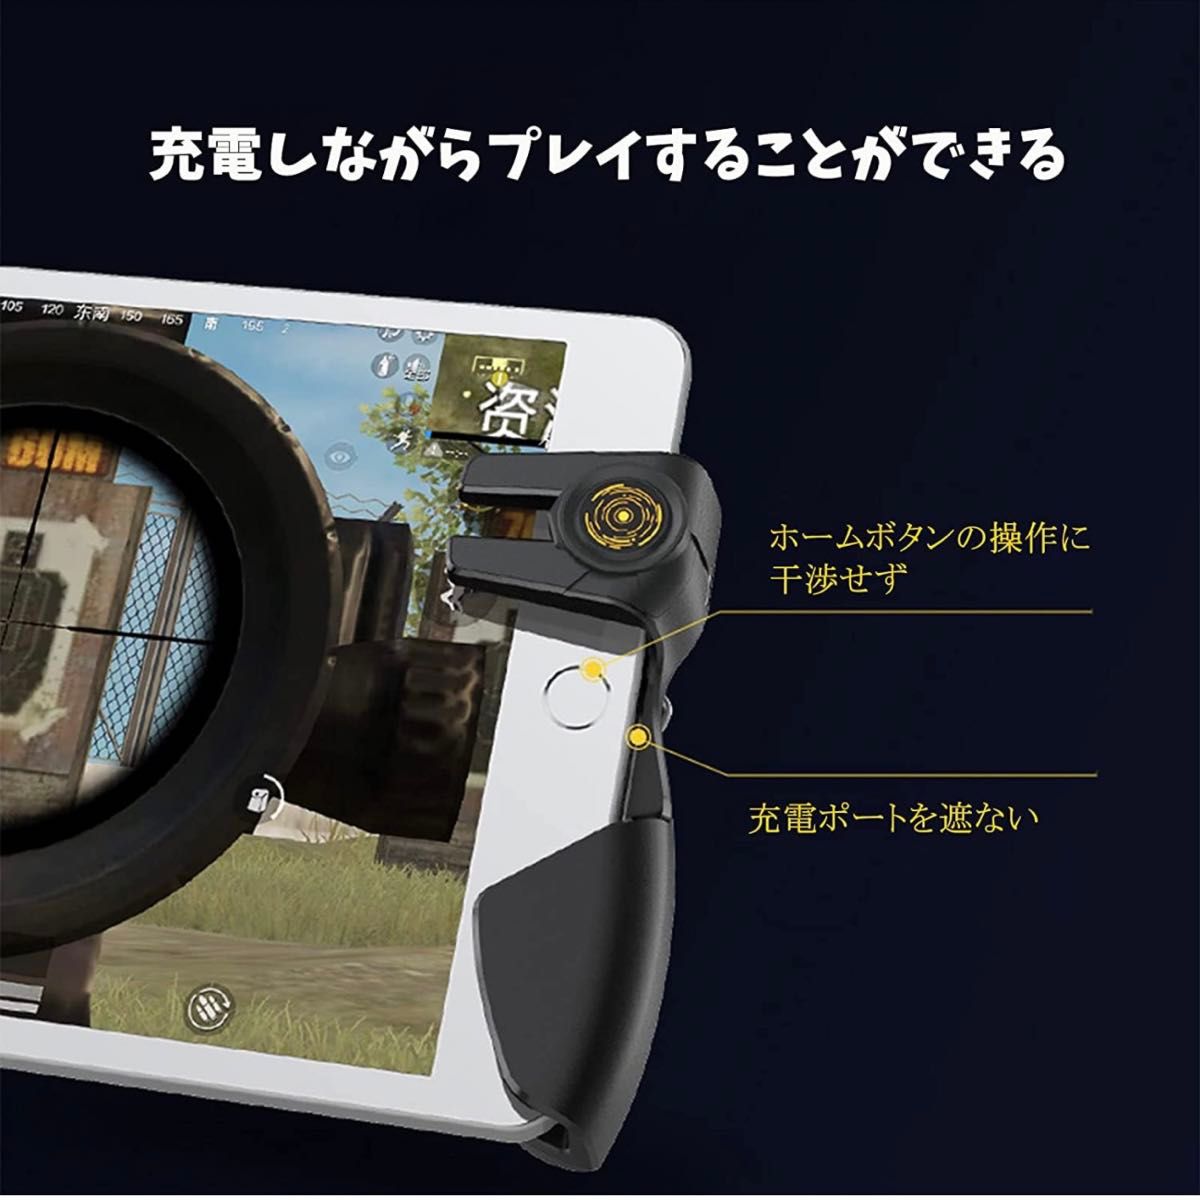 《新型》 6本指 タブレット iPad コントローラー 荒野行動 PUBG COD Mobile ゲームパッド 高感度 射撃ボタン